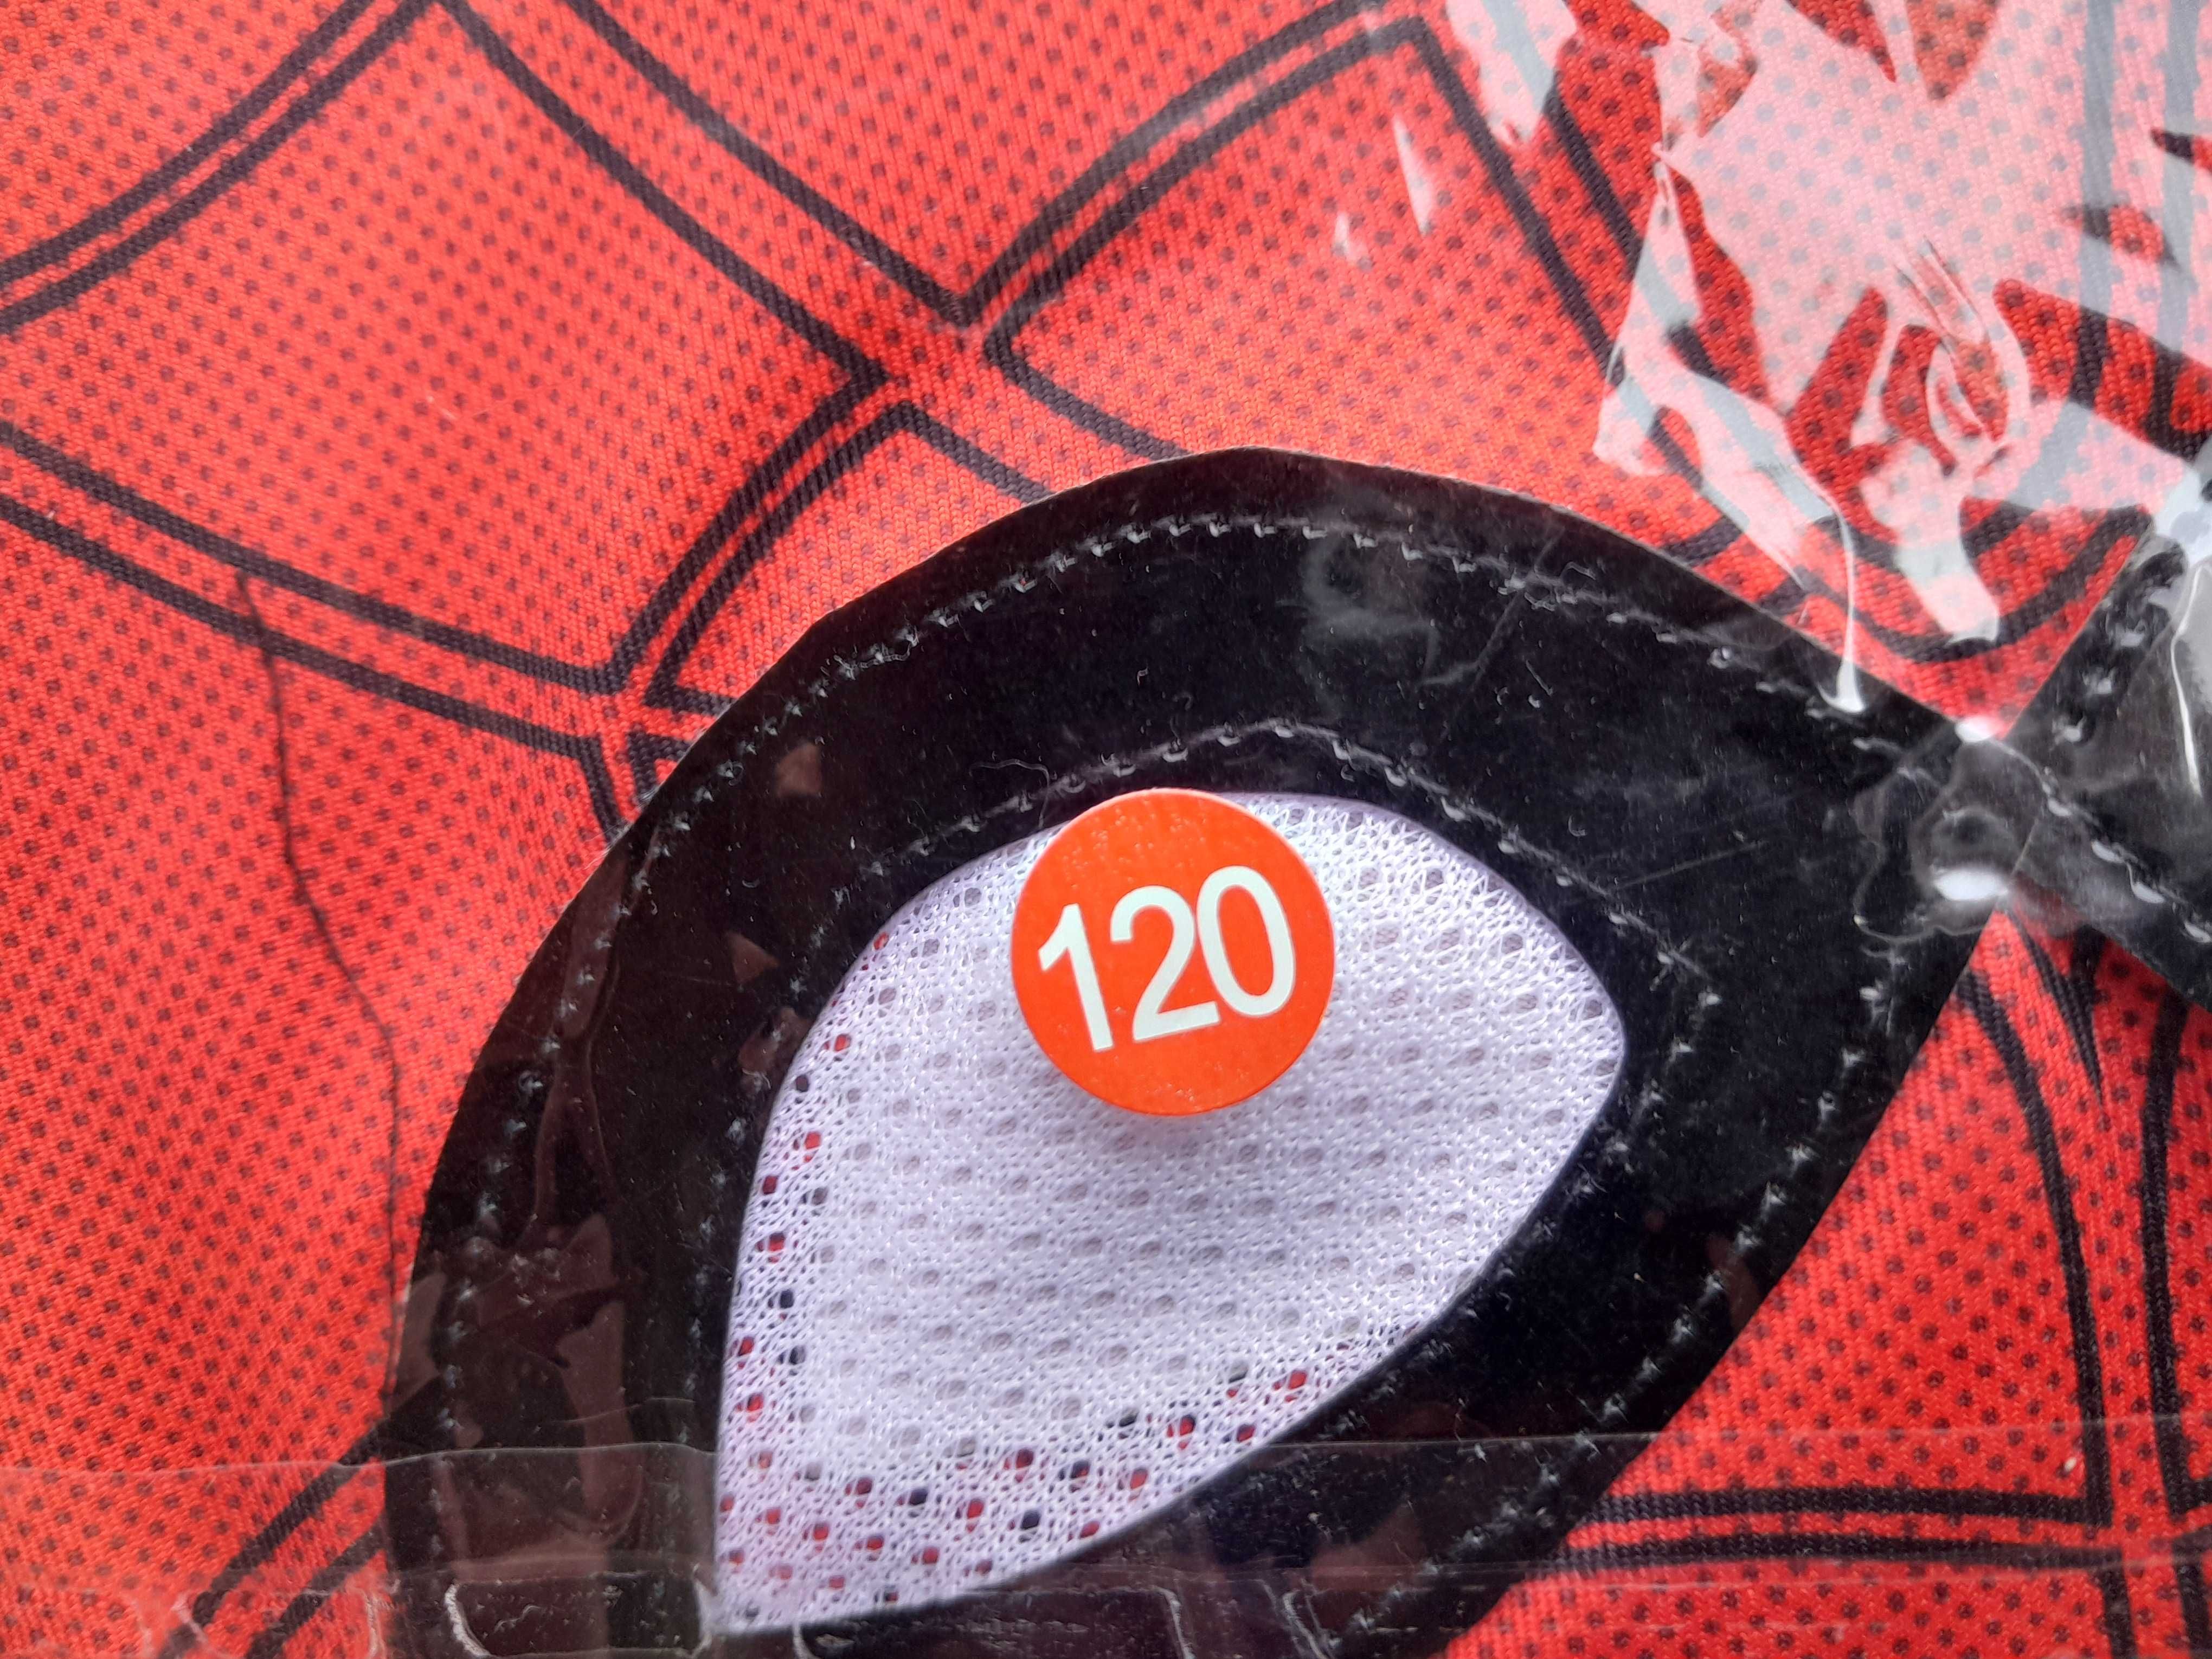 Kostium strój spider-man dla dzieci rozmiar 120 na zabawę nowy outlet